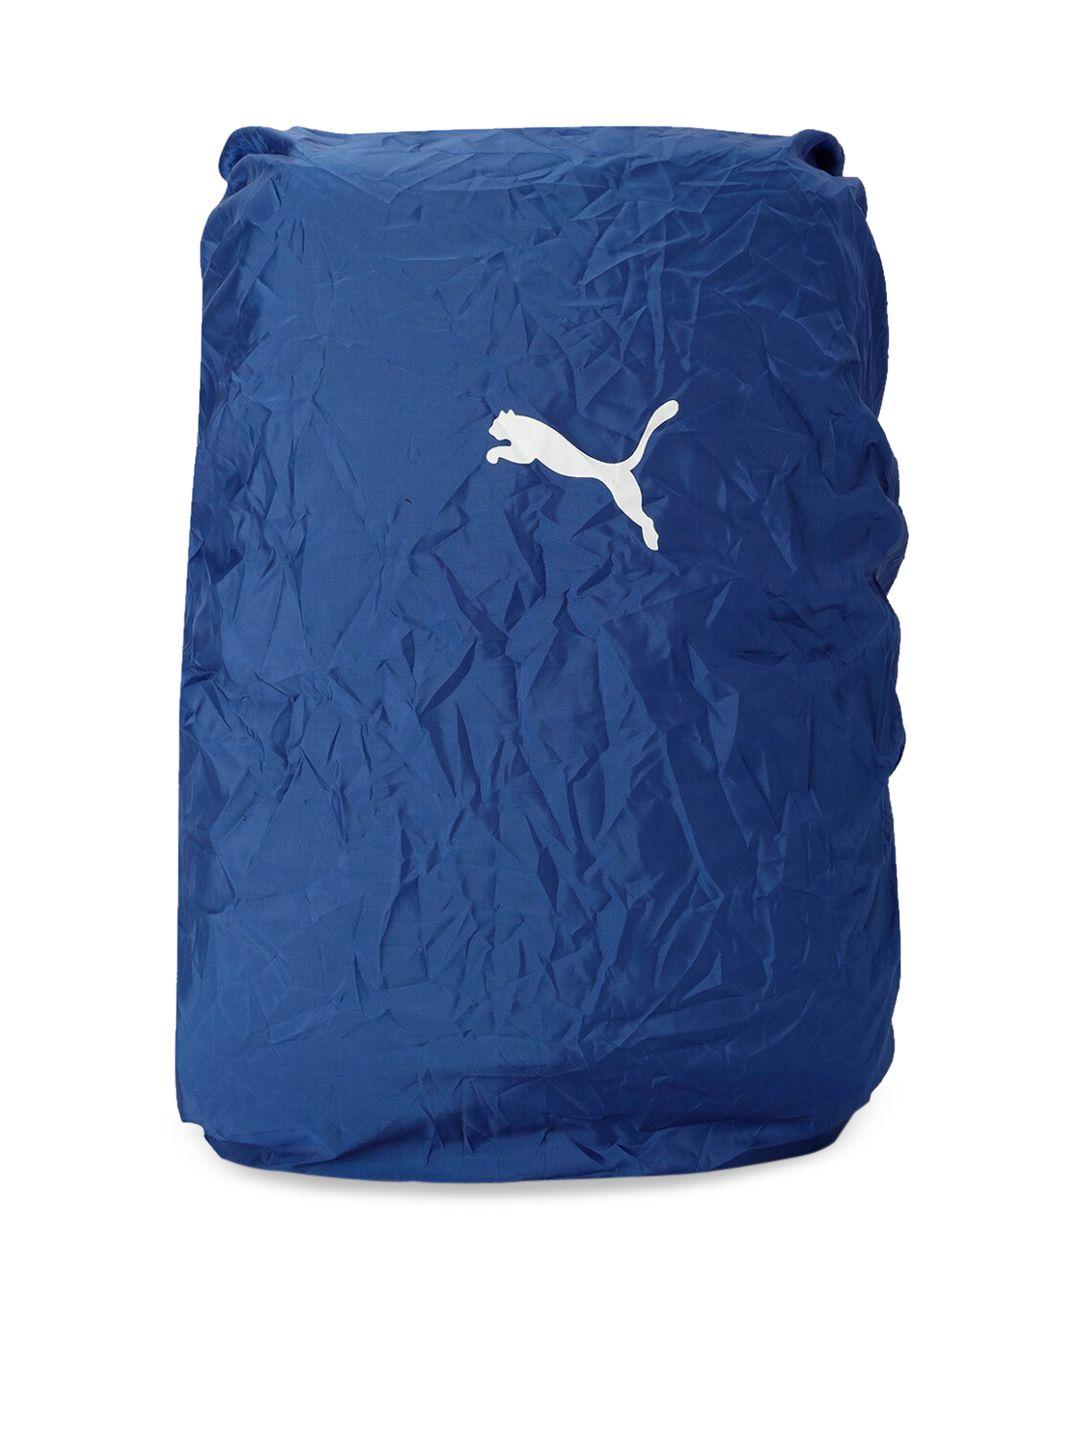 puma unisex blue solid packable rain cover